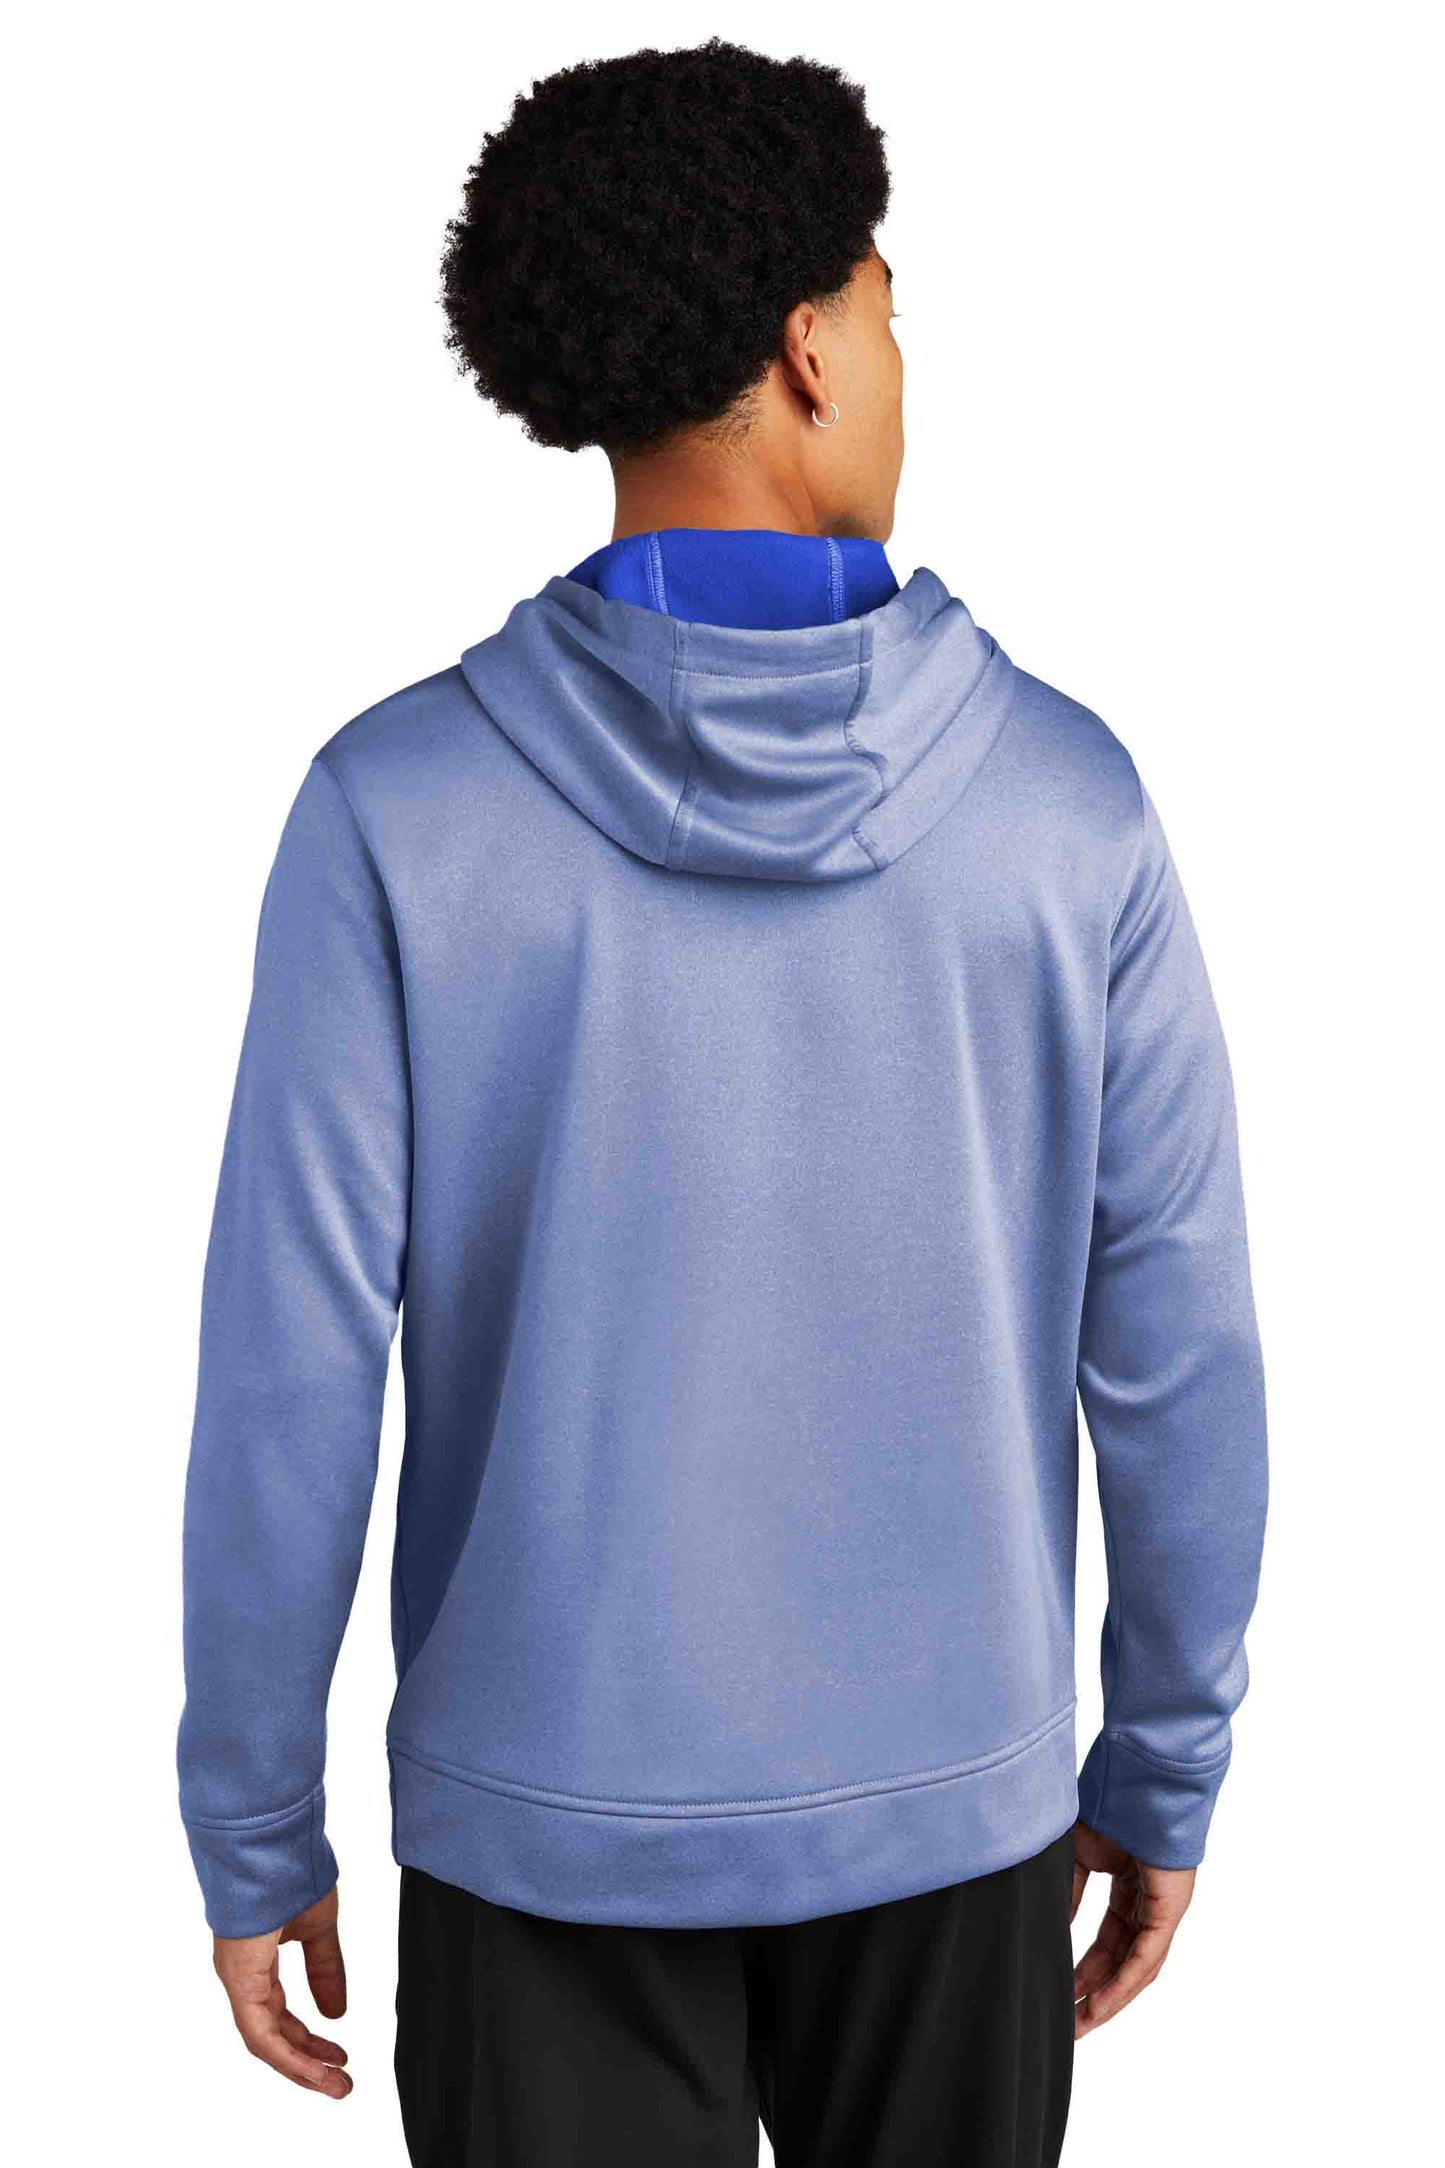 Lightweight Performance Hooded Sweatshirt